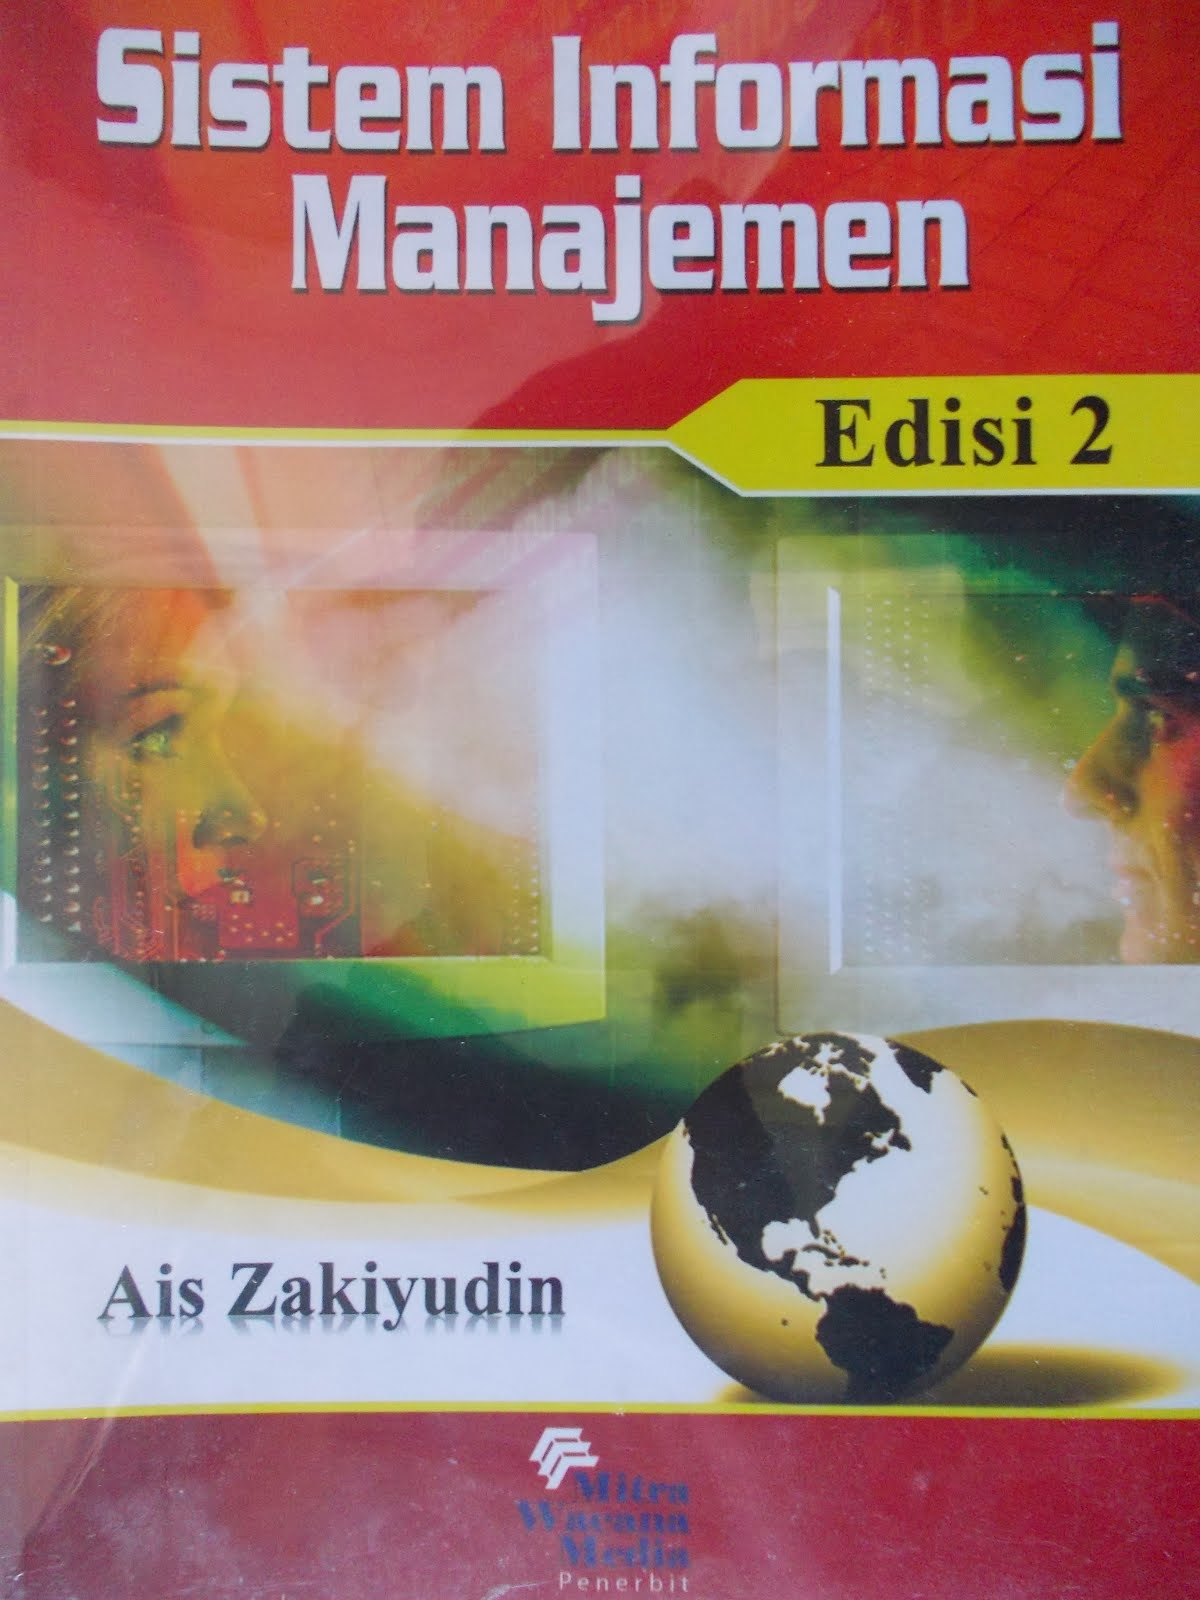 Buku: Sistem Informasi Manajemen